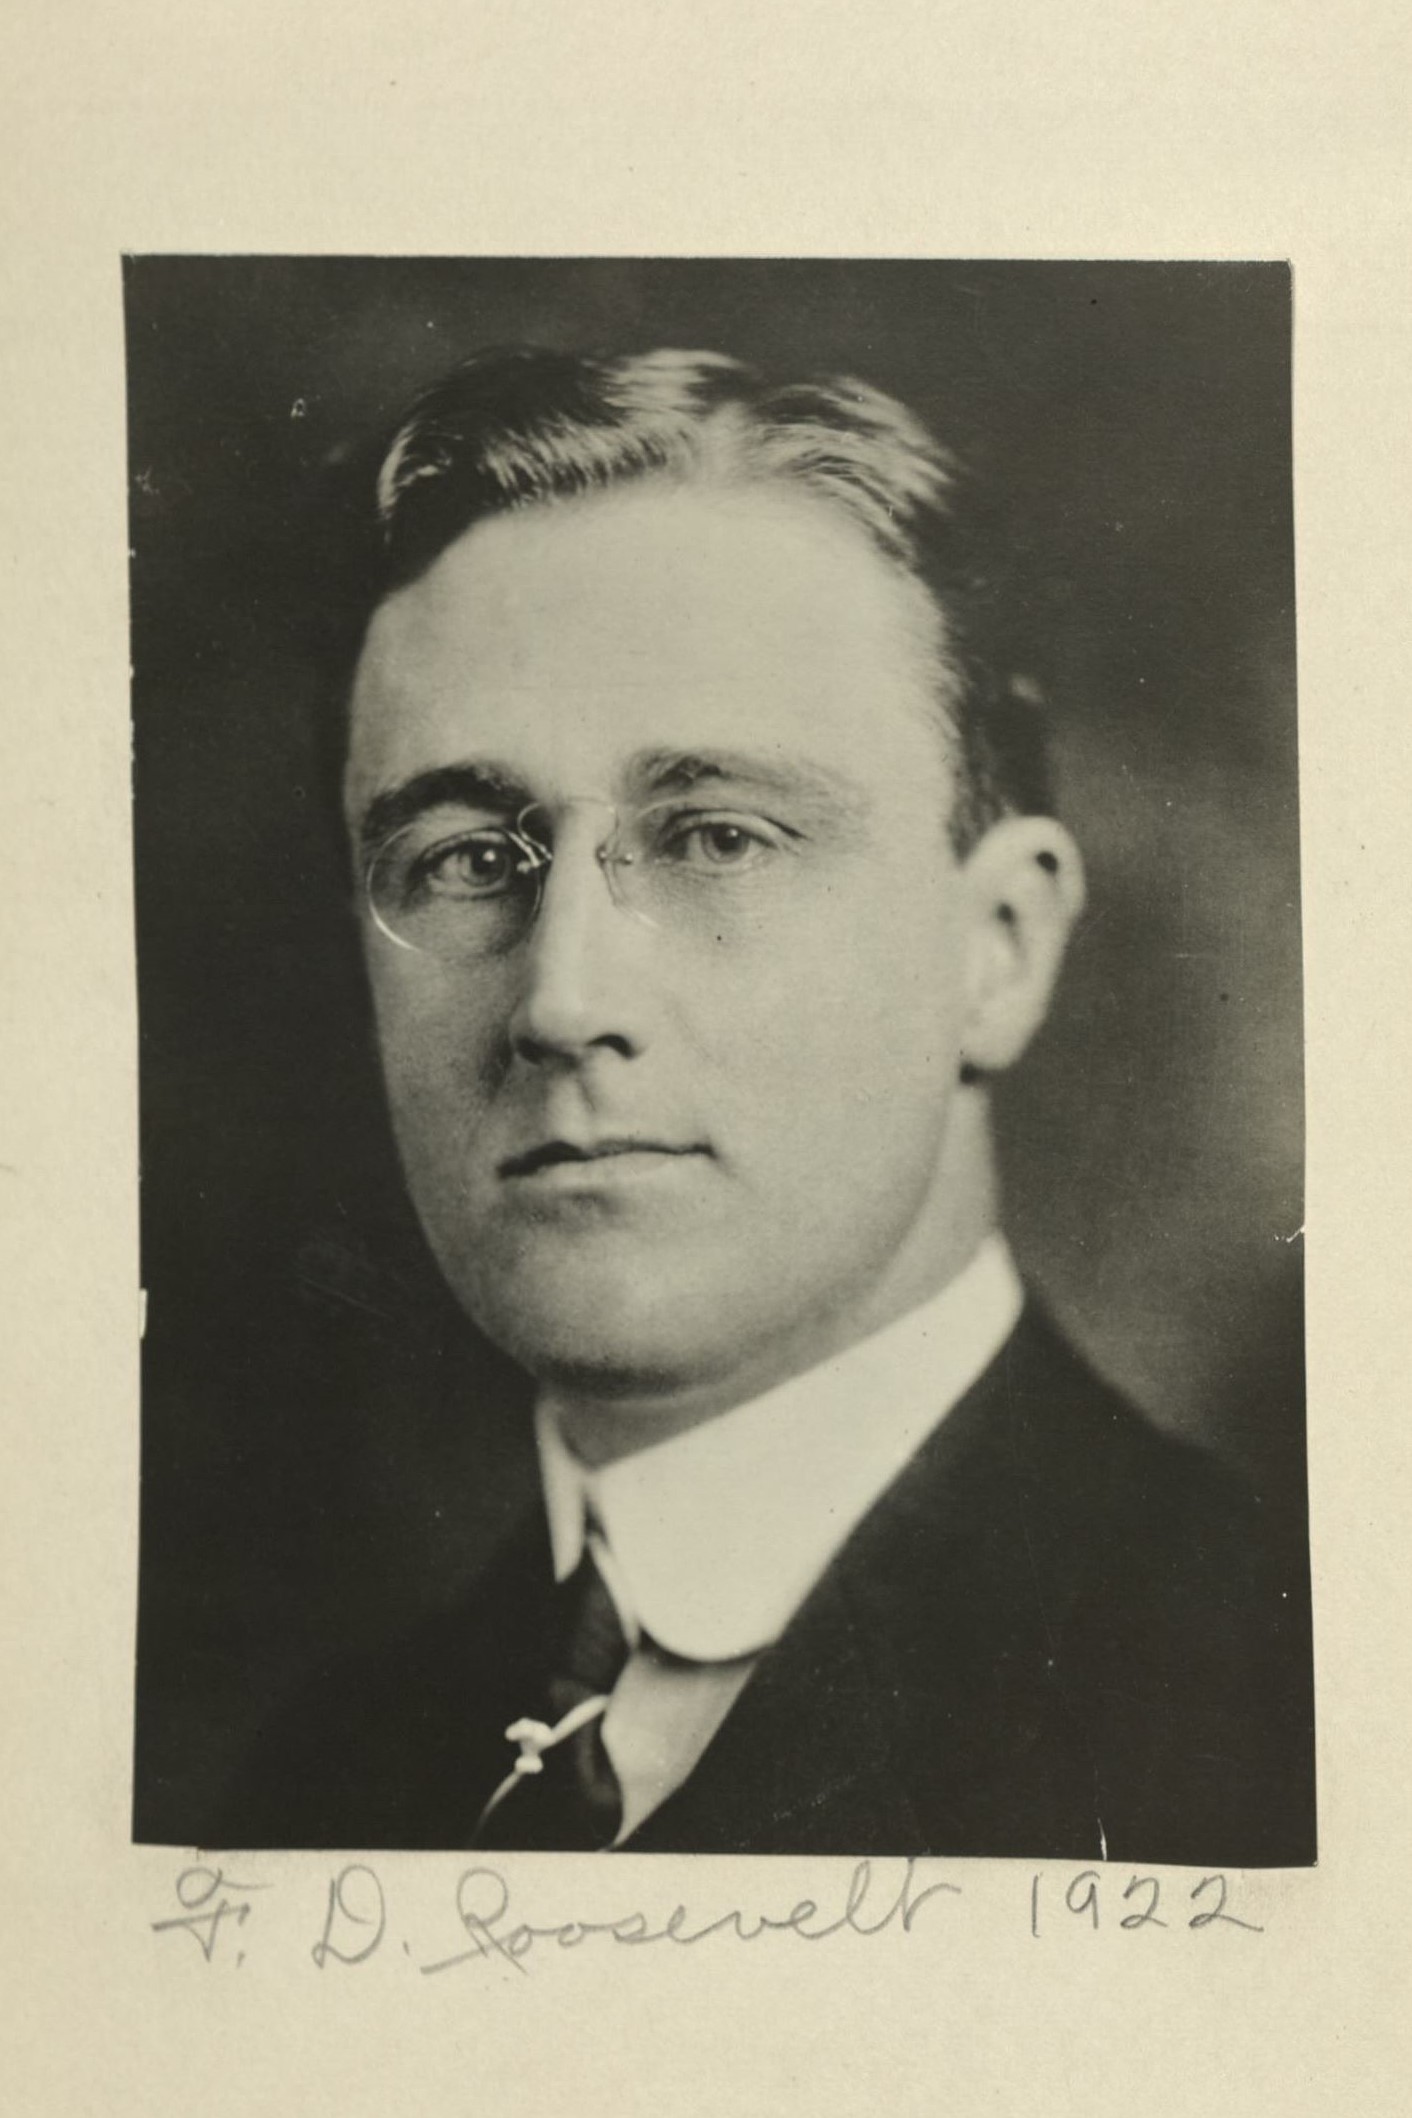 Member portrait of Franklin D. Roosevelt